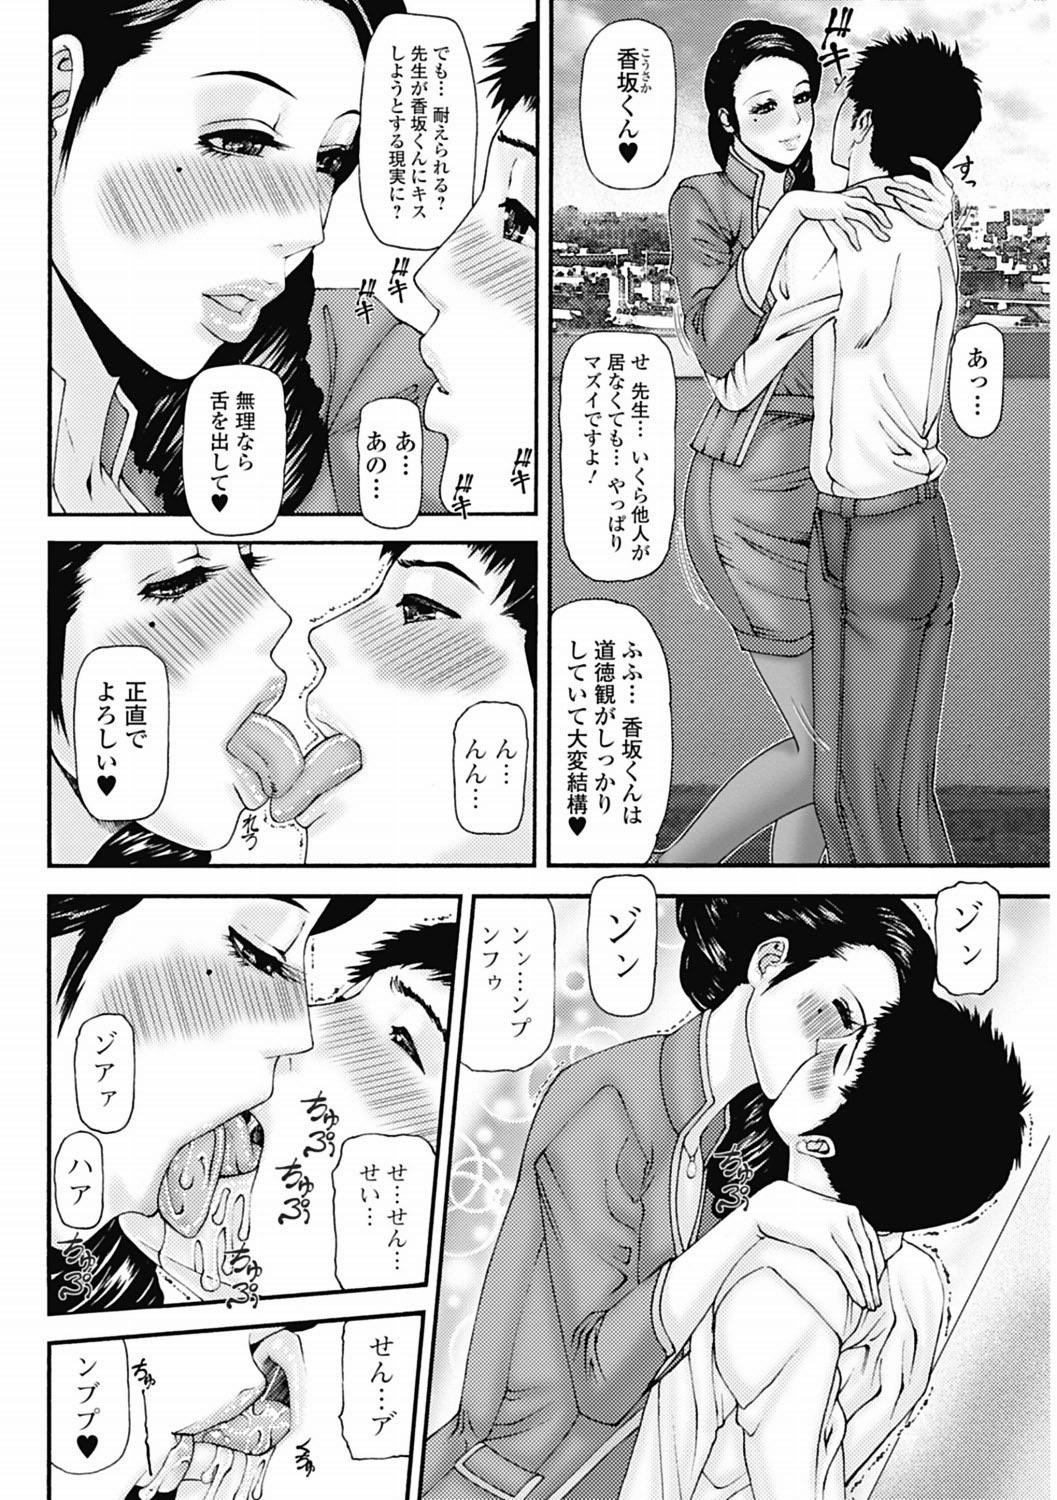 Bishoujo Kakumei KIWAME 2012-04 Vol.19 164